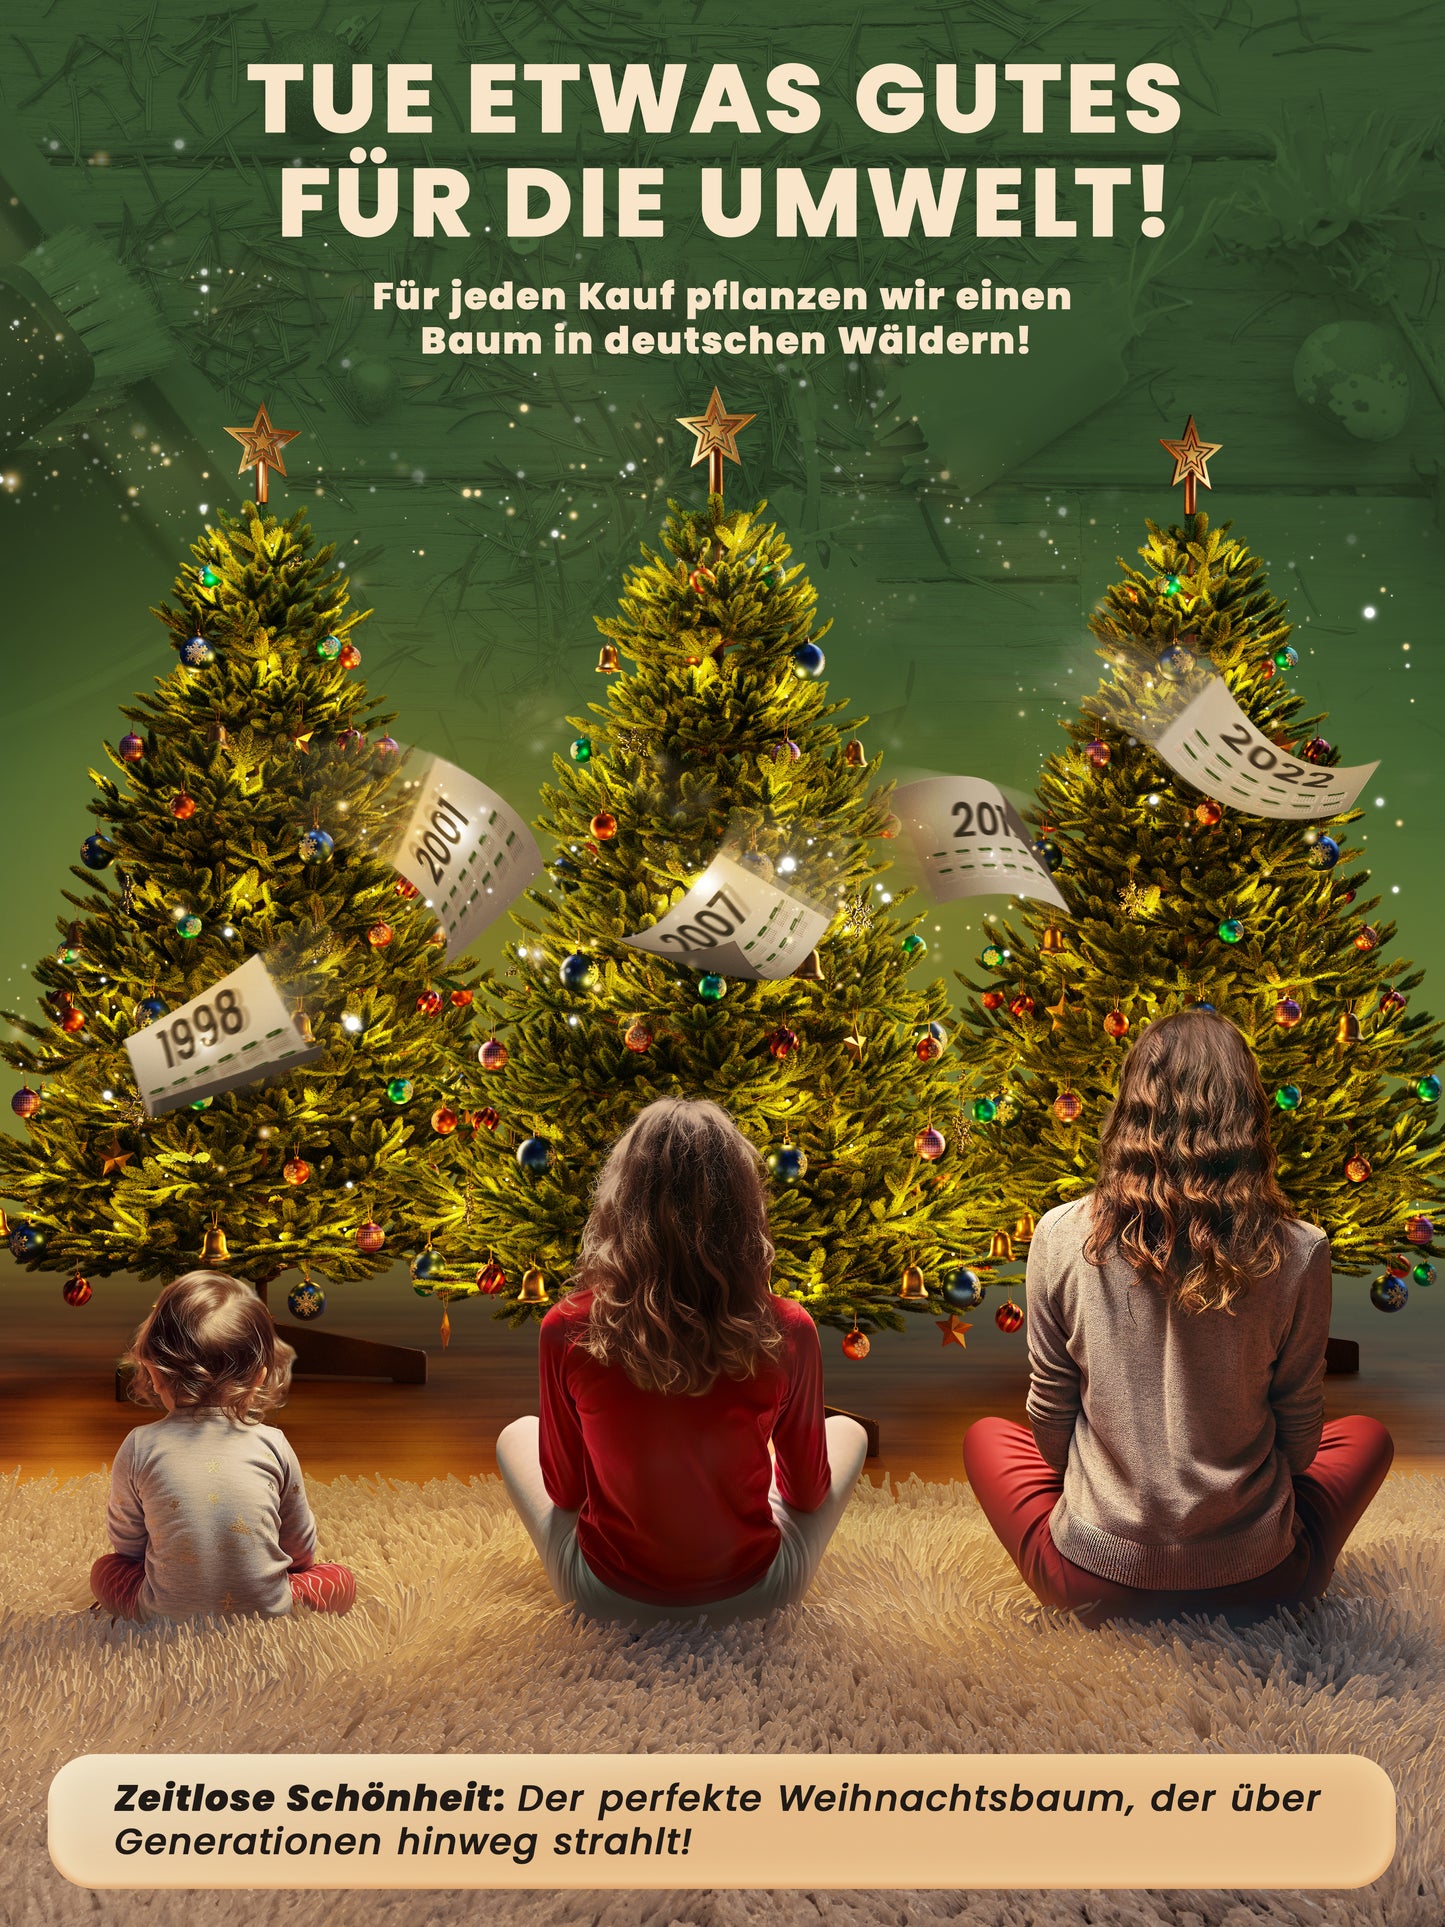 ArtiTree® Künstlicher Weihnachtsbaum - Premium Tanne 240cm